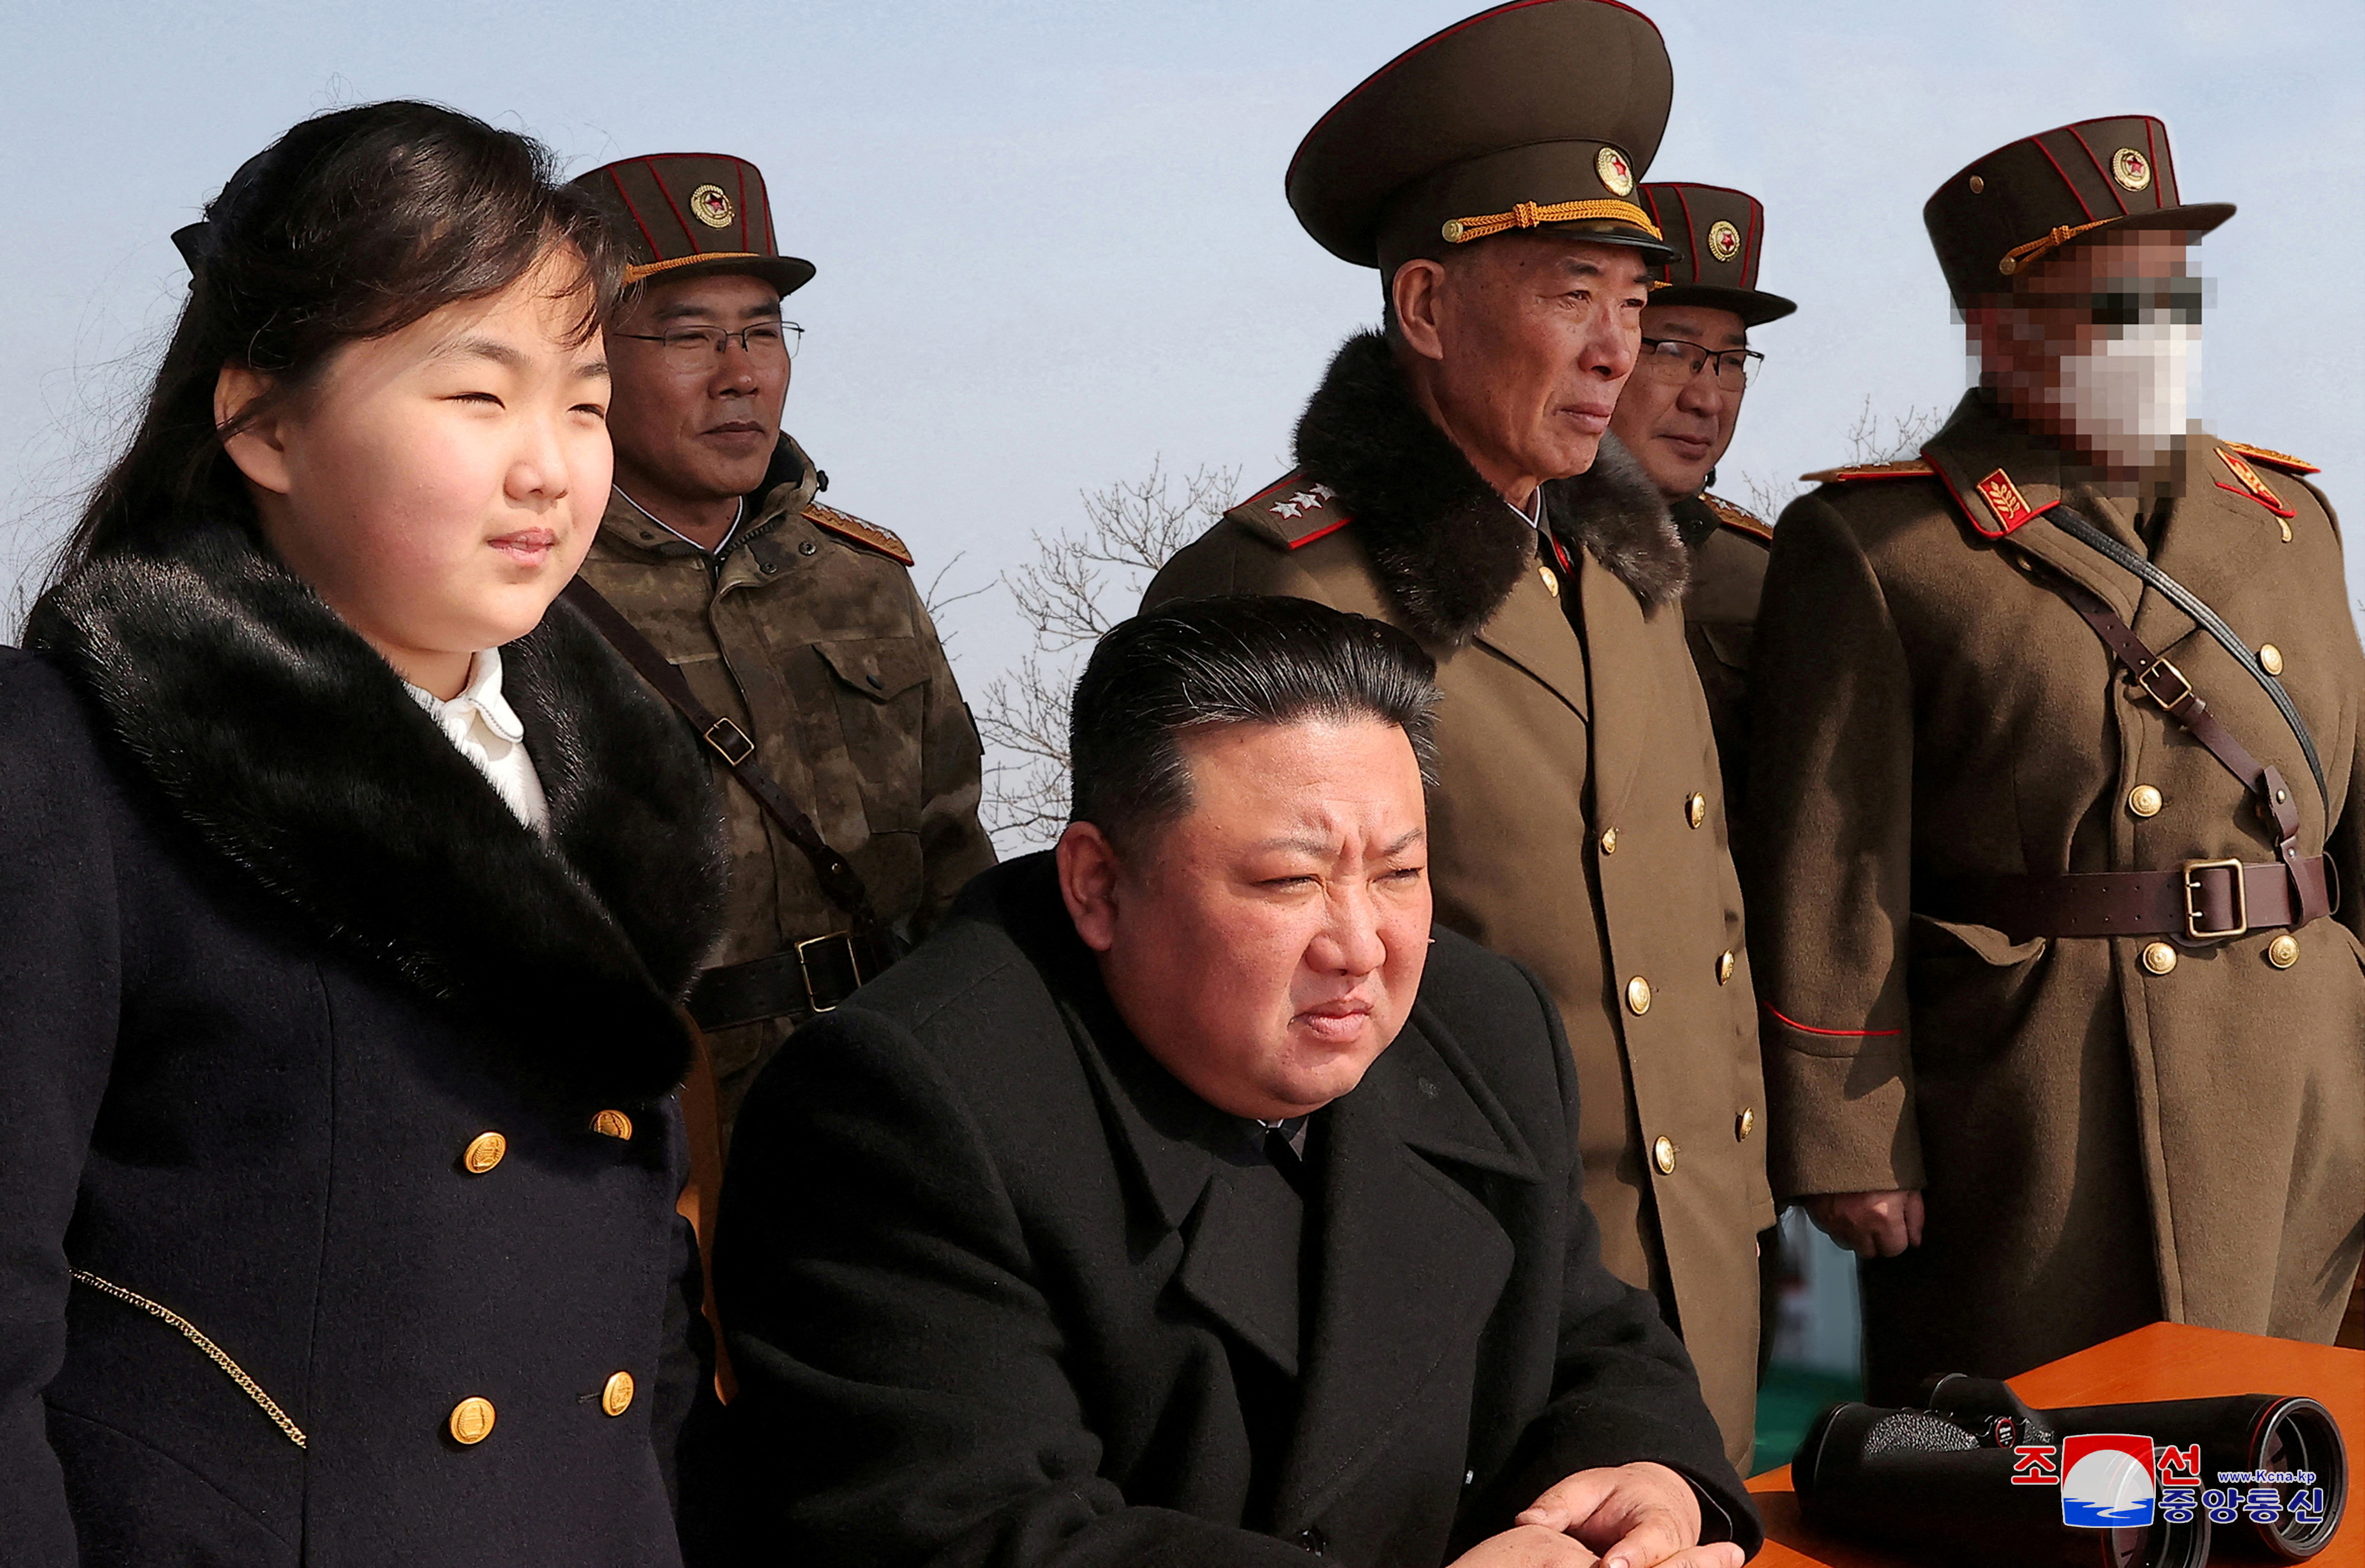 El régimen probó esta semana en presencia del líder Kim Jong-un un nuevo tipo de dron submarino capaz de generar tsunamis radiactivos similar al sistema ruso conocido como Poseidón. (KCNA via REUTERS)